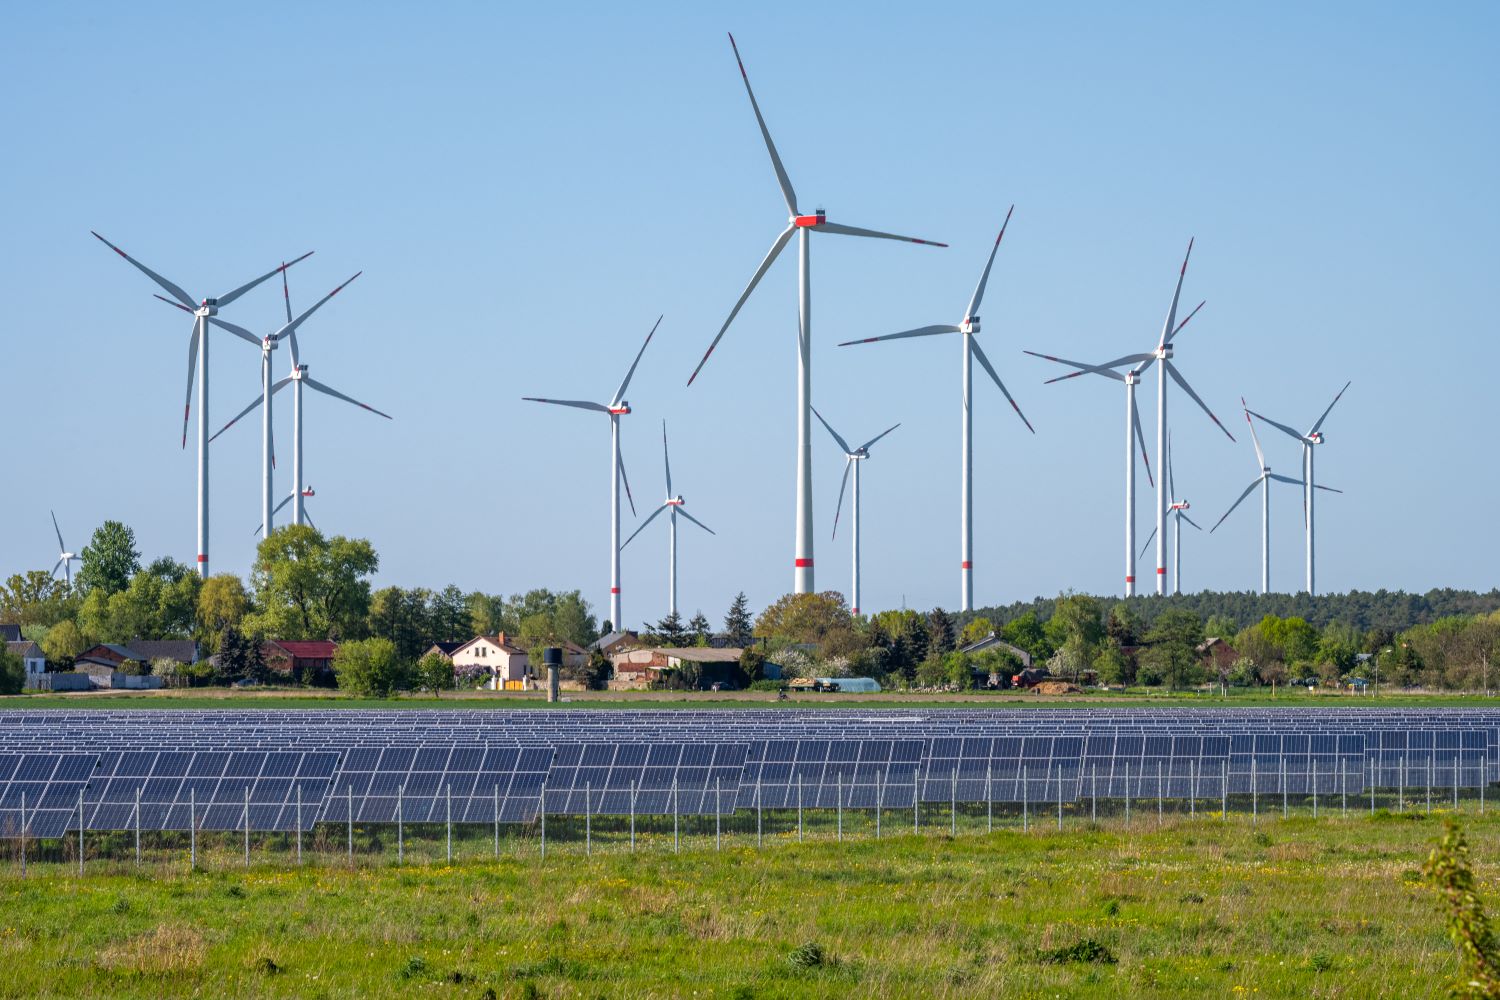 “Renewable Energy: พลังงานทดแทน กุญแจสู่การพัฒนาที่ยั่งยืน”